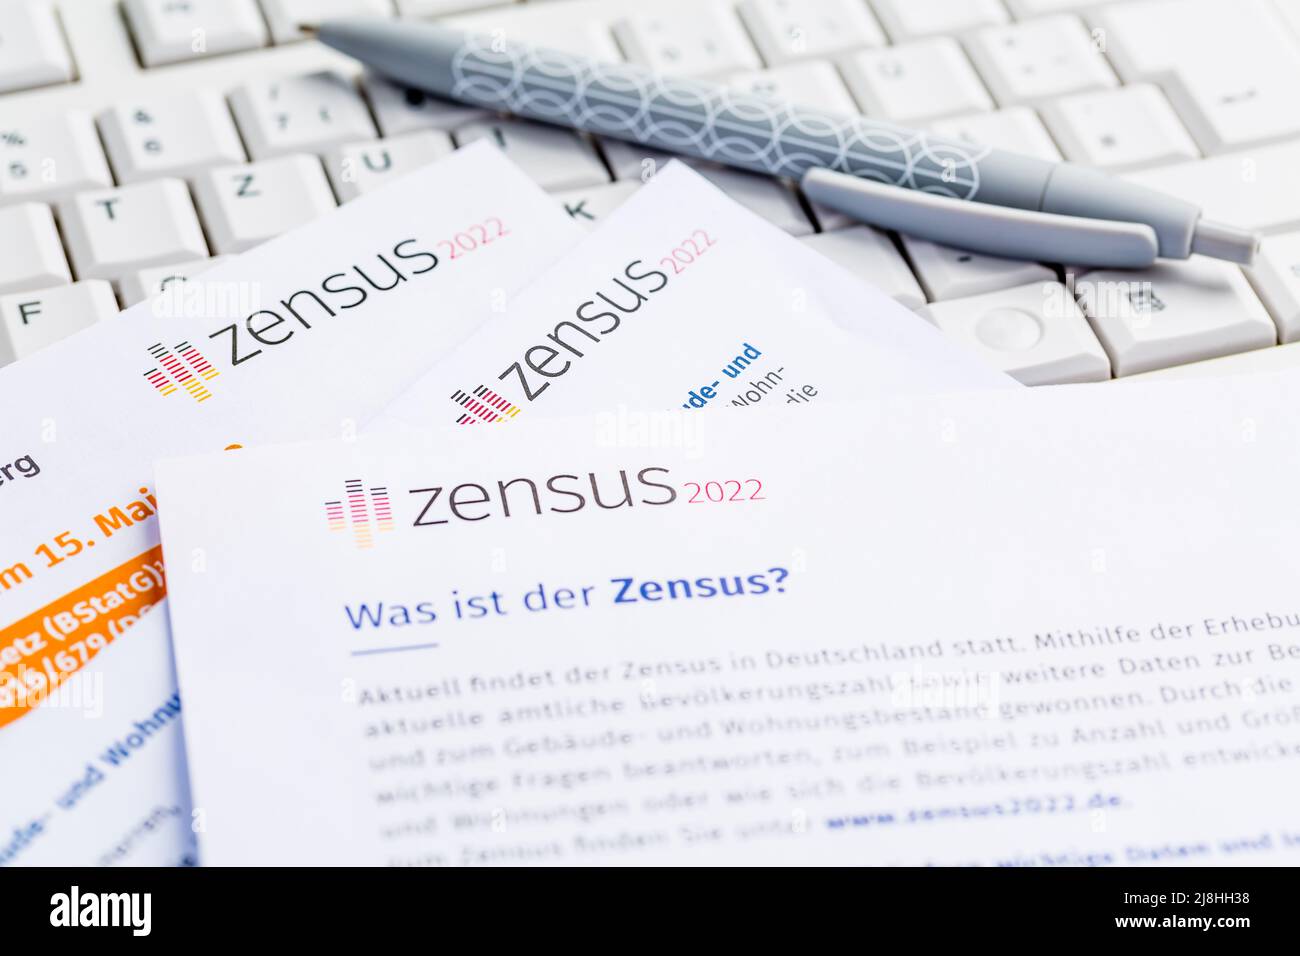 Volkszählung 2022 in Deutschland: Offizielle Umfrage der Regierung zur Volkszählung (Bevölkerung, Gebäude und Haushalt) mit Tastatur zur Online-Befragung Stockfoto